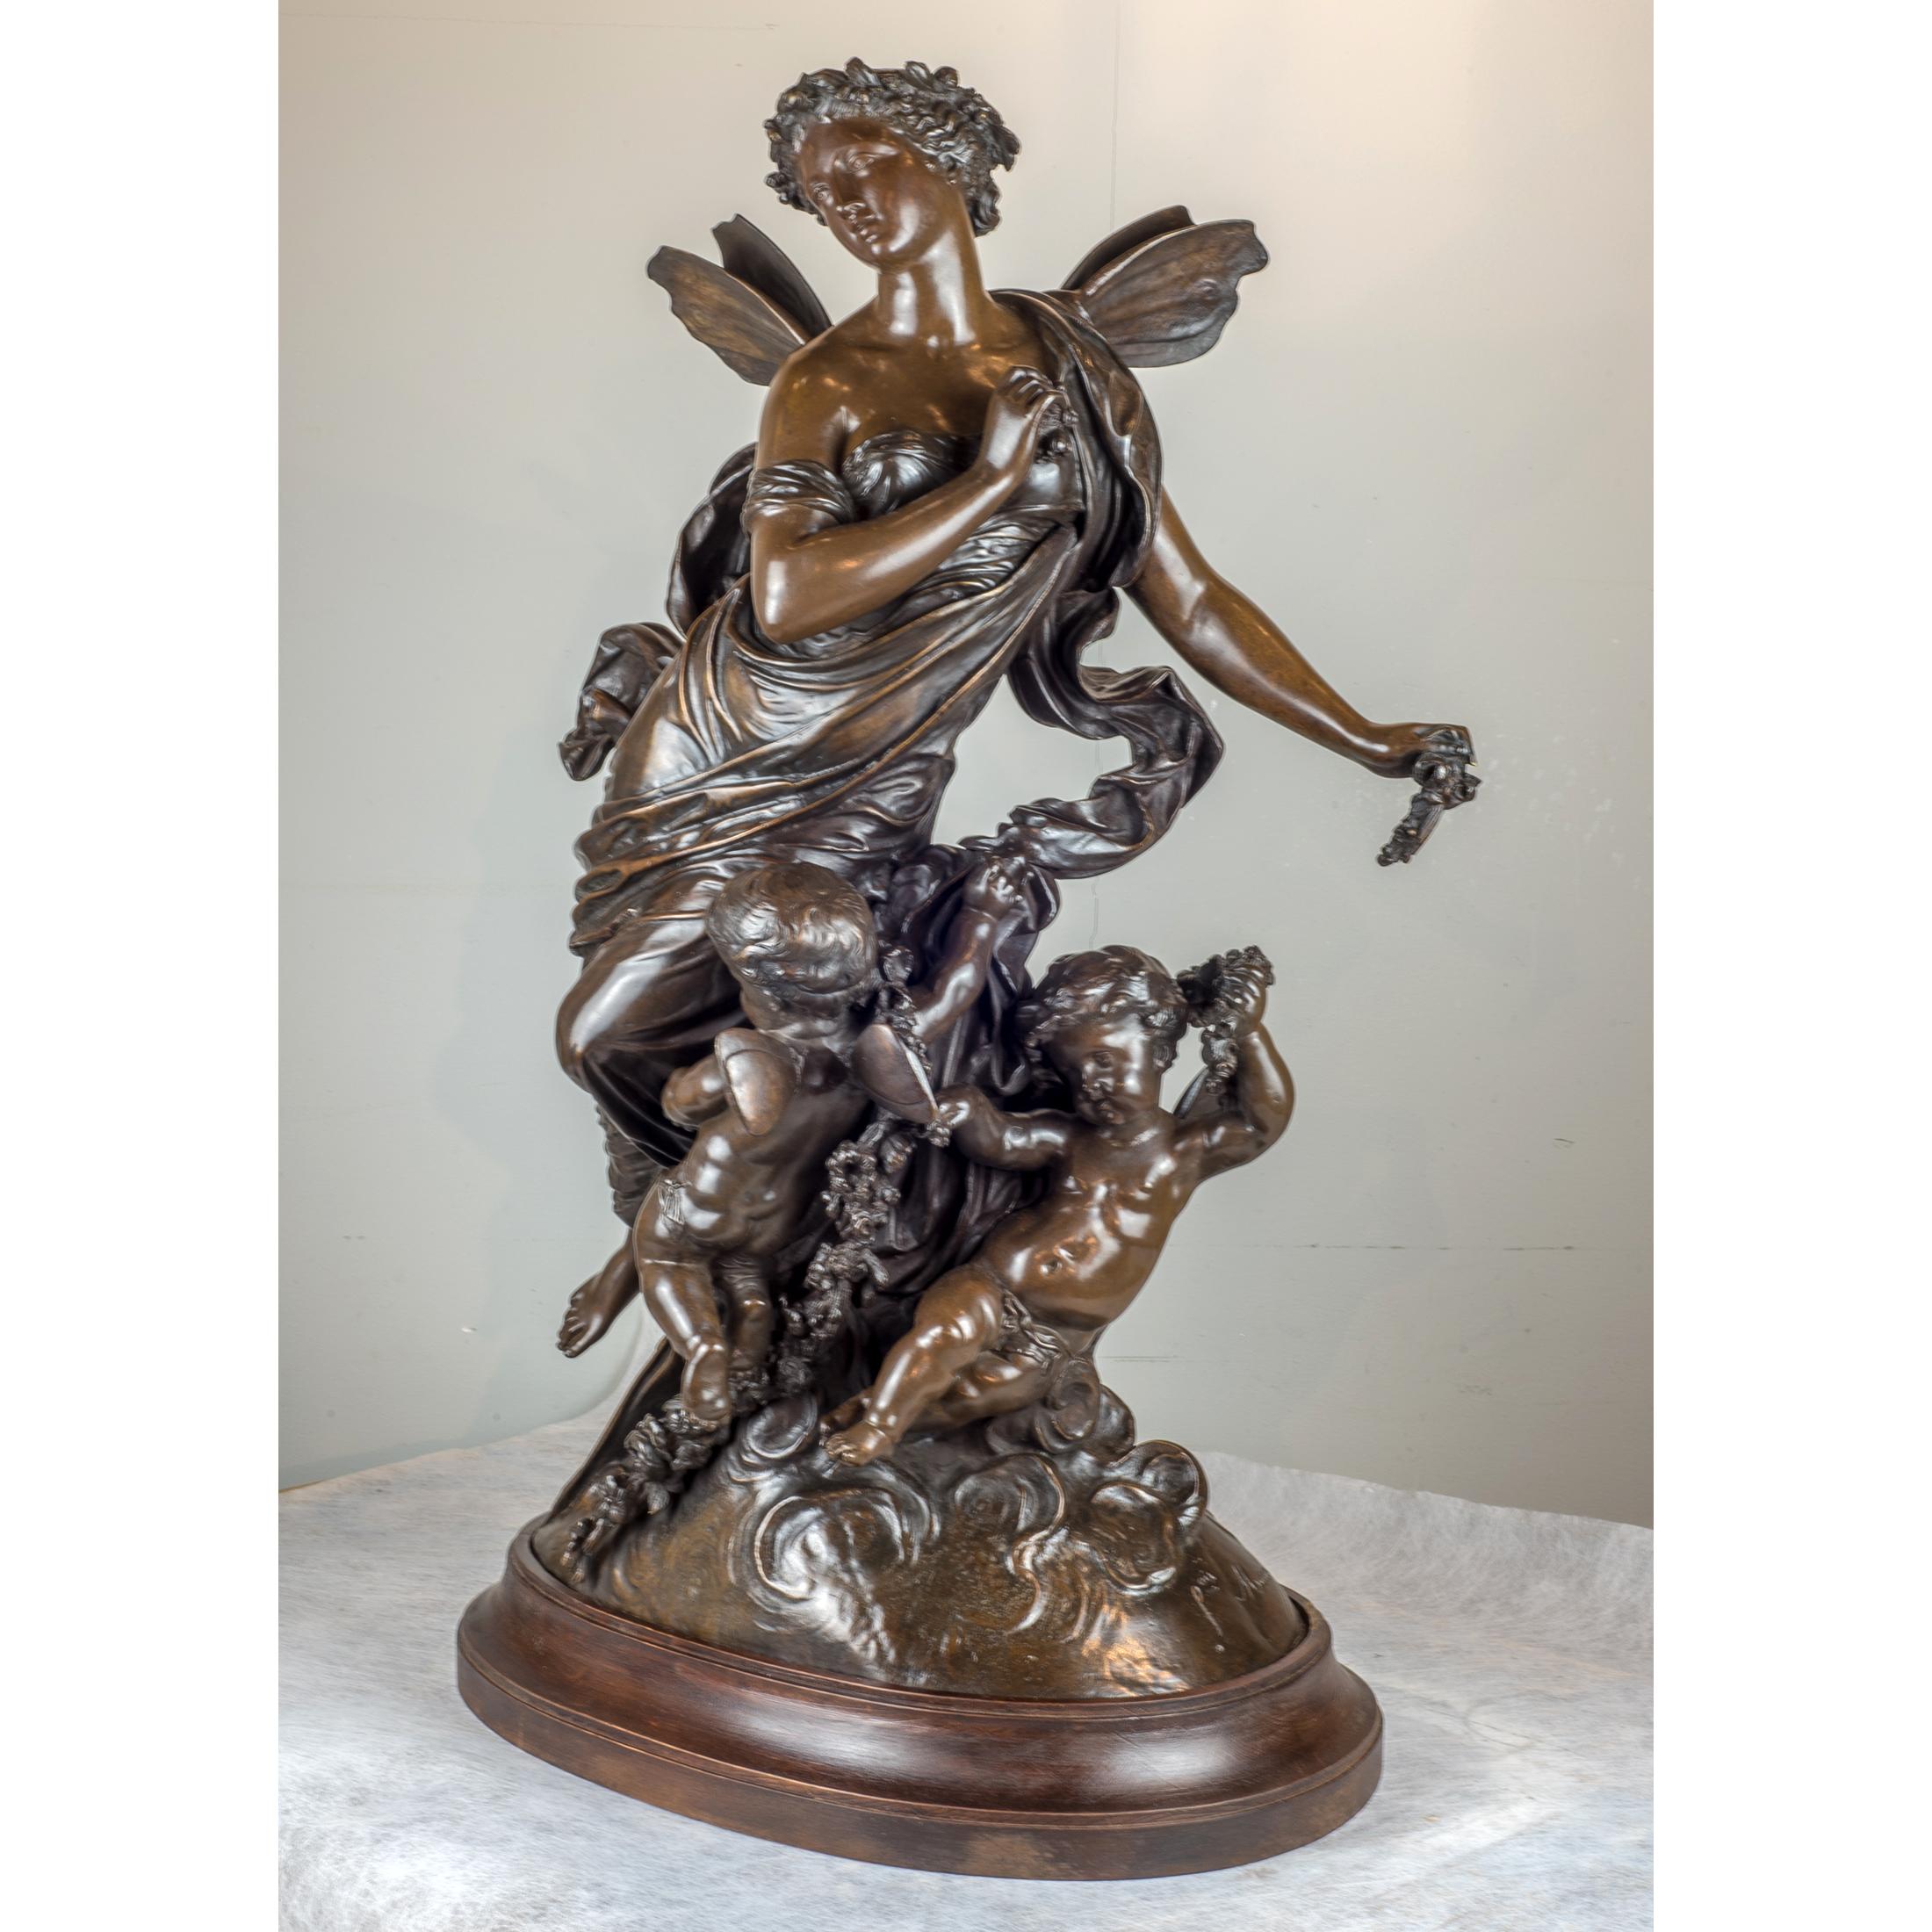 Groupe figuratif en bronze patiné de belle qualité, composé d'anges et de chérubins sur une base ovale. Signé 